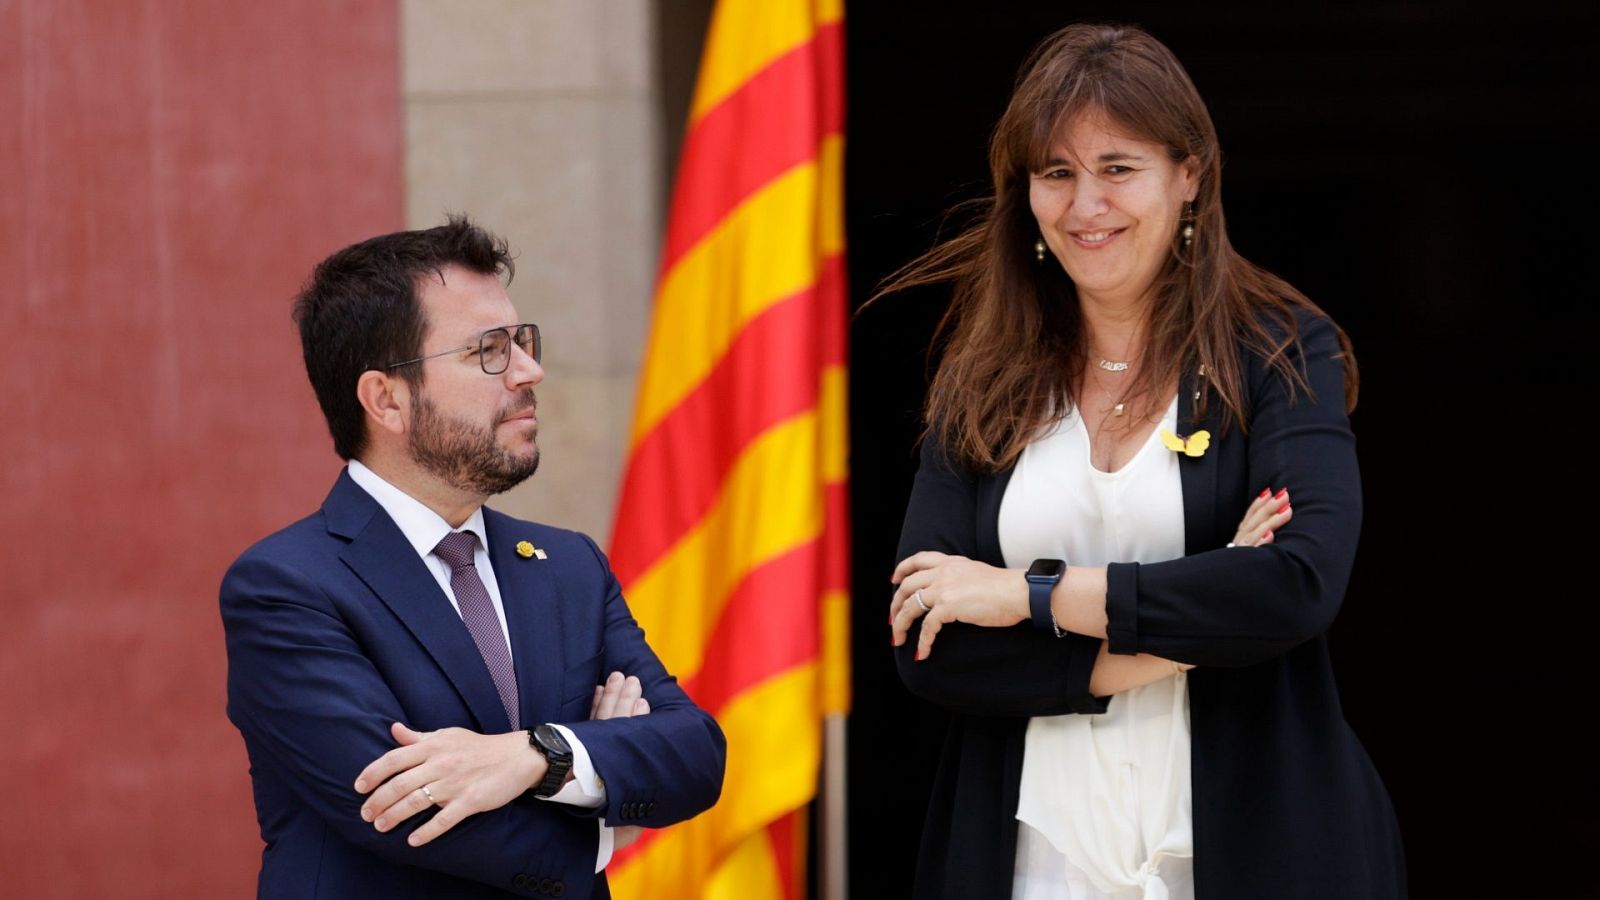 El presidente de la Generalitat conversa con la presidenta del Parlament.